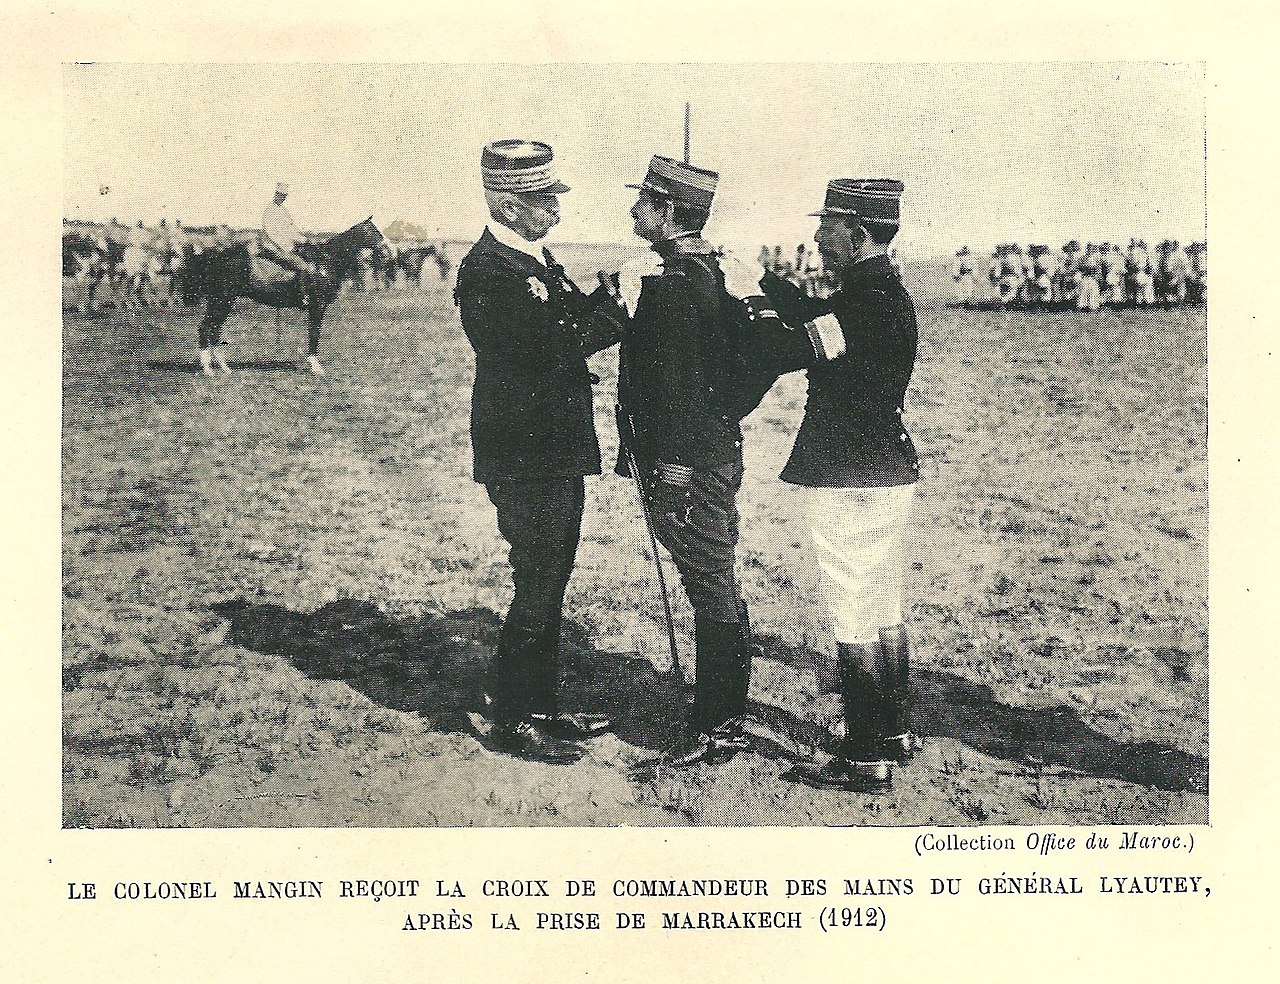 Mangin décoré croix de commandeur par Lyautey en 1912 a marrakech